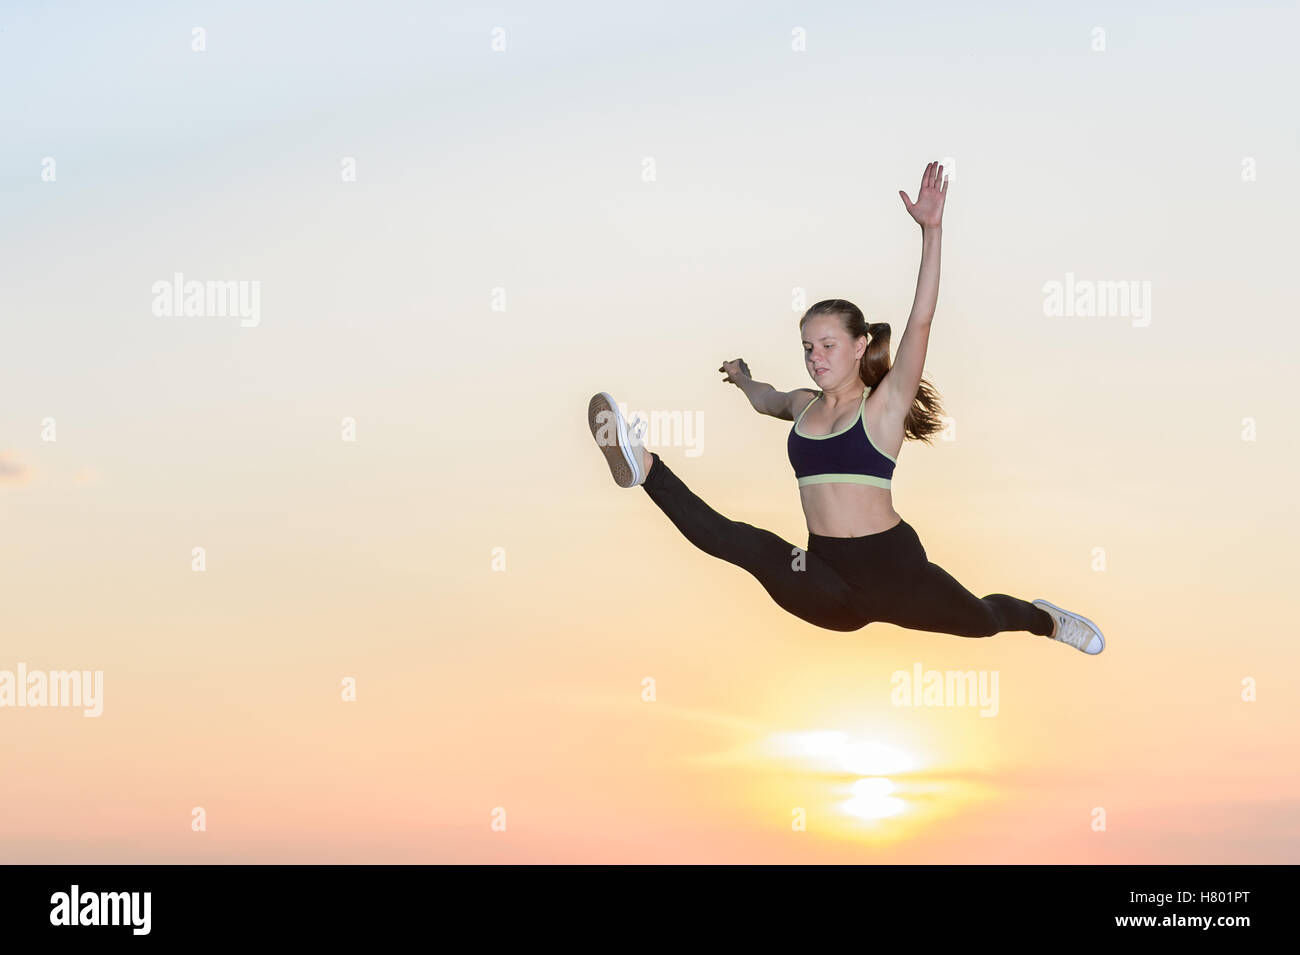 Das junge Mädchen engagiert im Kunstturnen bei Sonnenuntergang Hintergrund Stockfoto